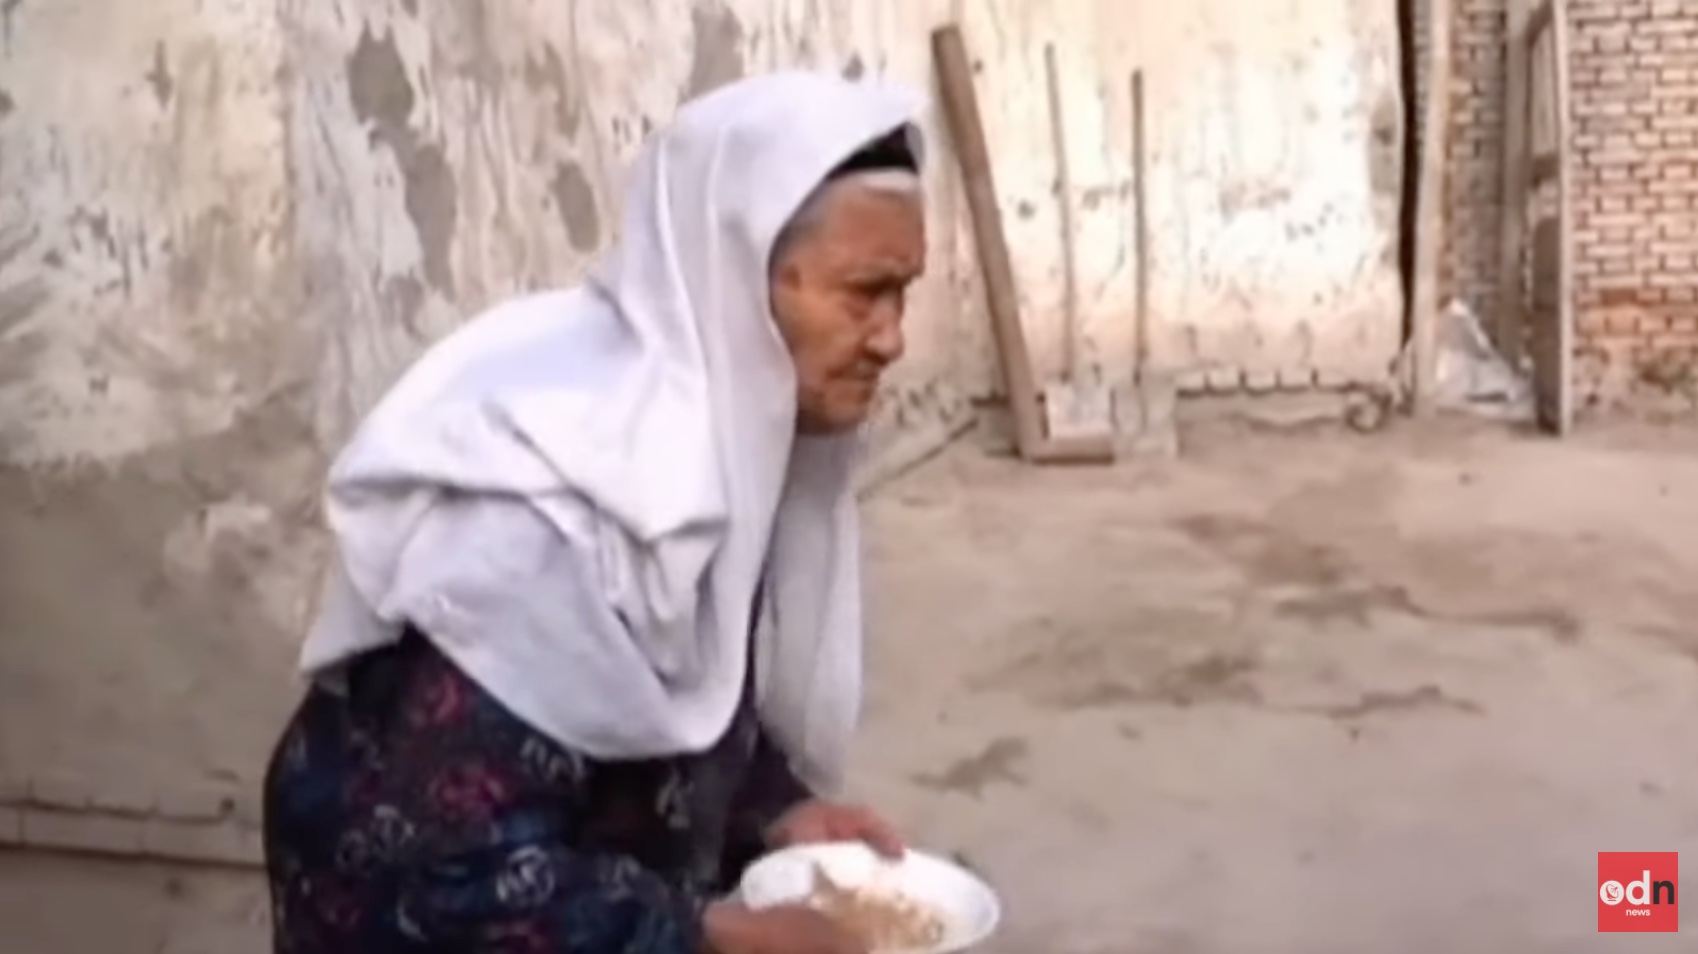 135 éves korában meghalt Kína legidősebb lakója, aki egyébként ujgur nemzetiségű volt